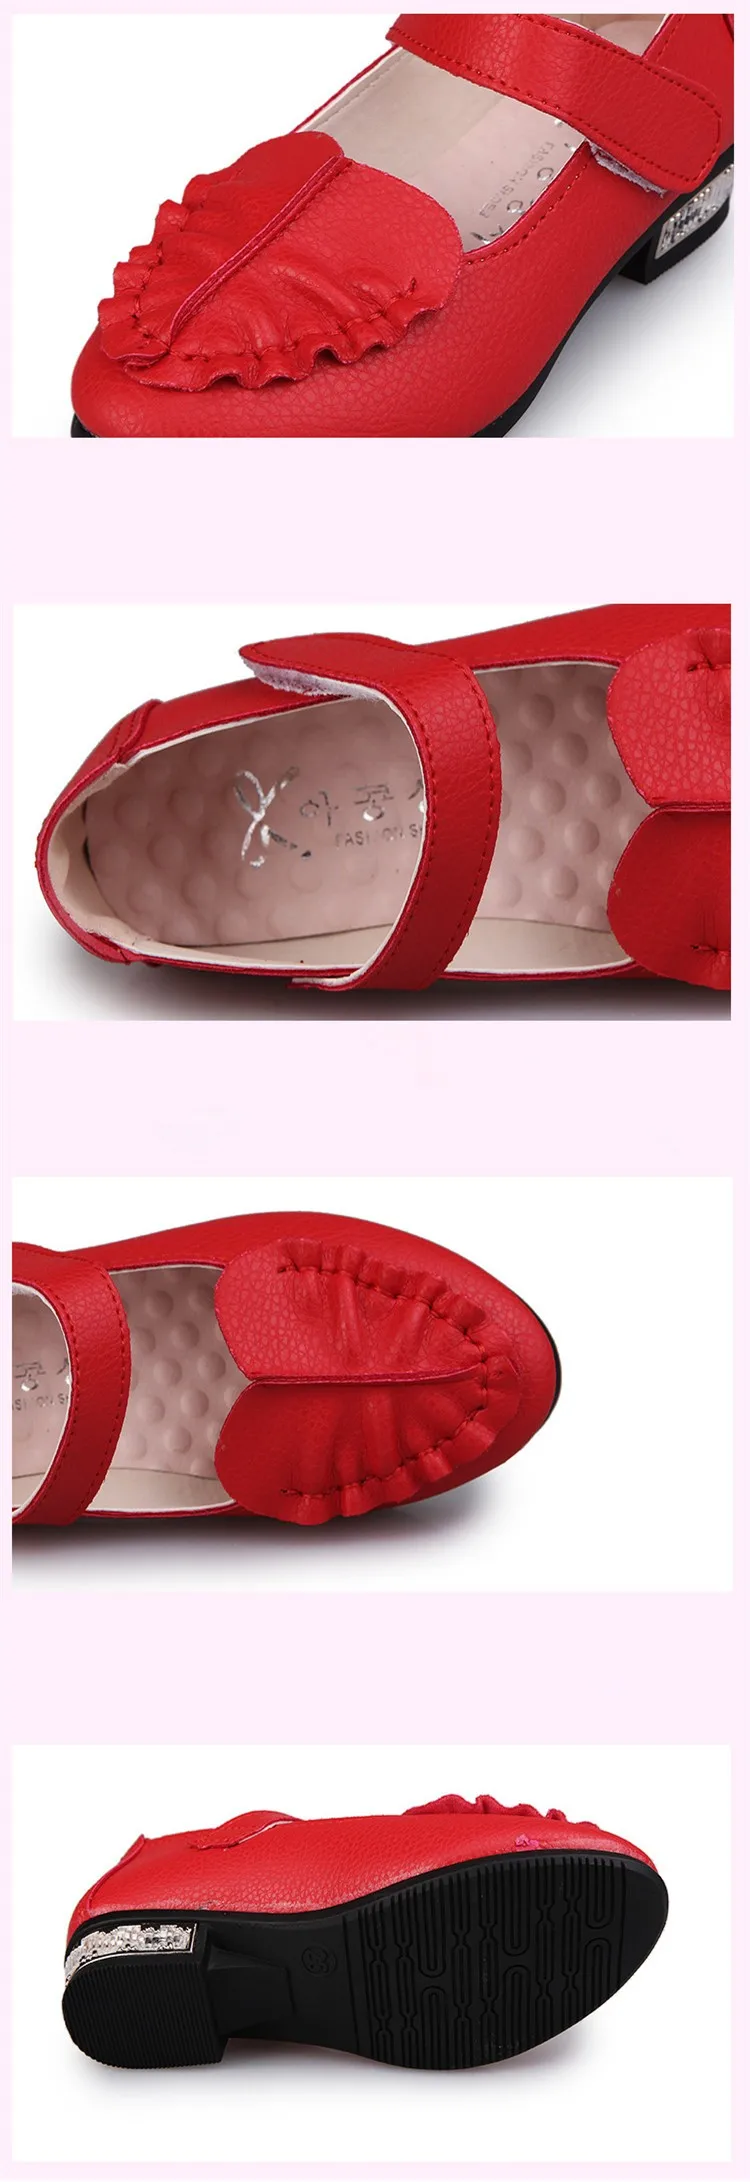 J Ghee стелька 16,5-19 см обувь для девочек Принцесса Милая Детская обувь с маленьким каблуком Детские кроссовки вечерние Рождество для девочек